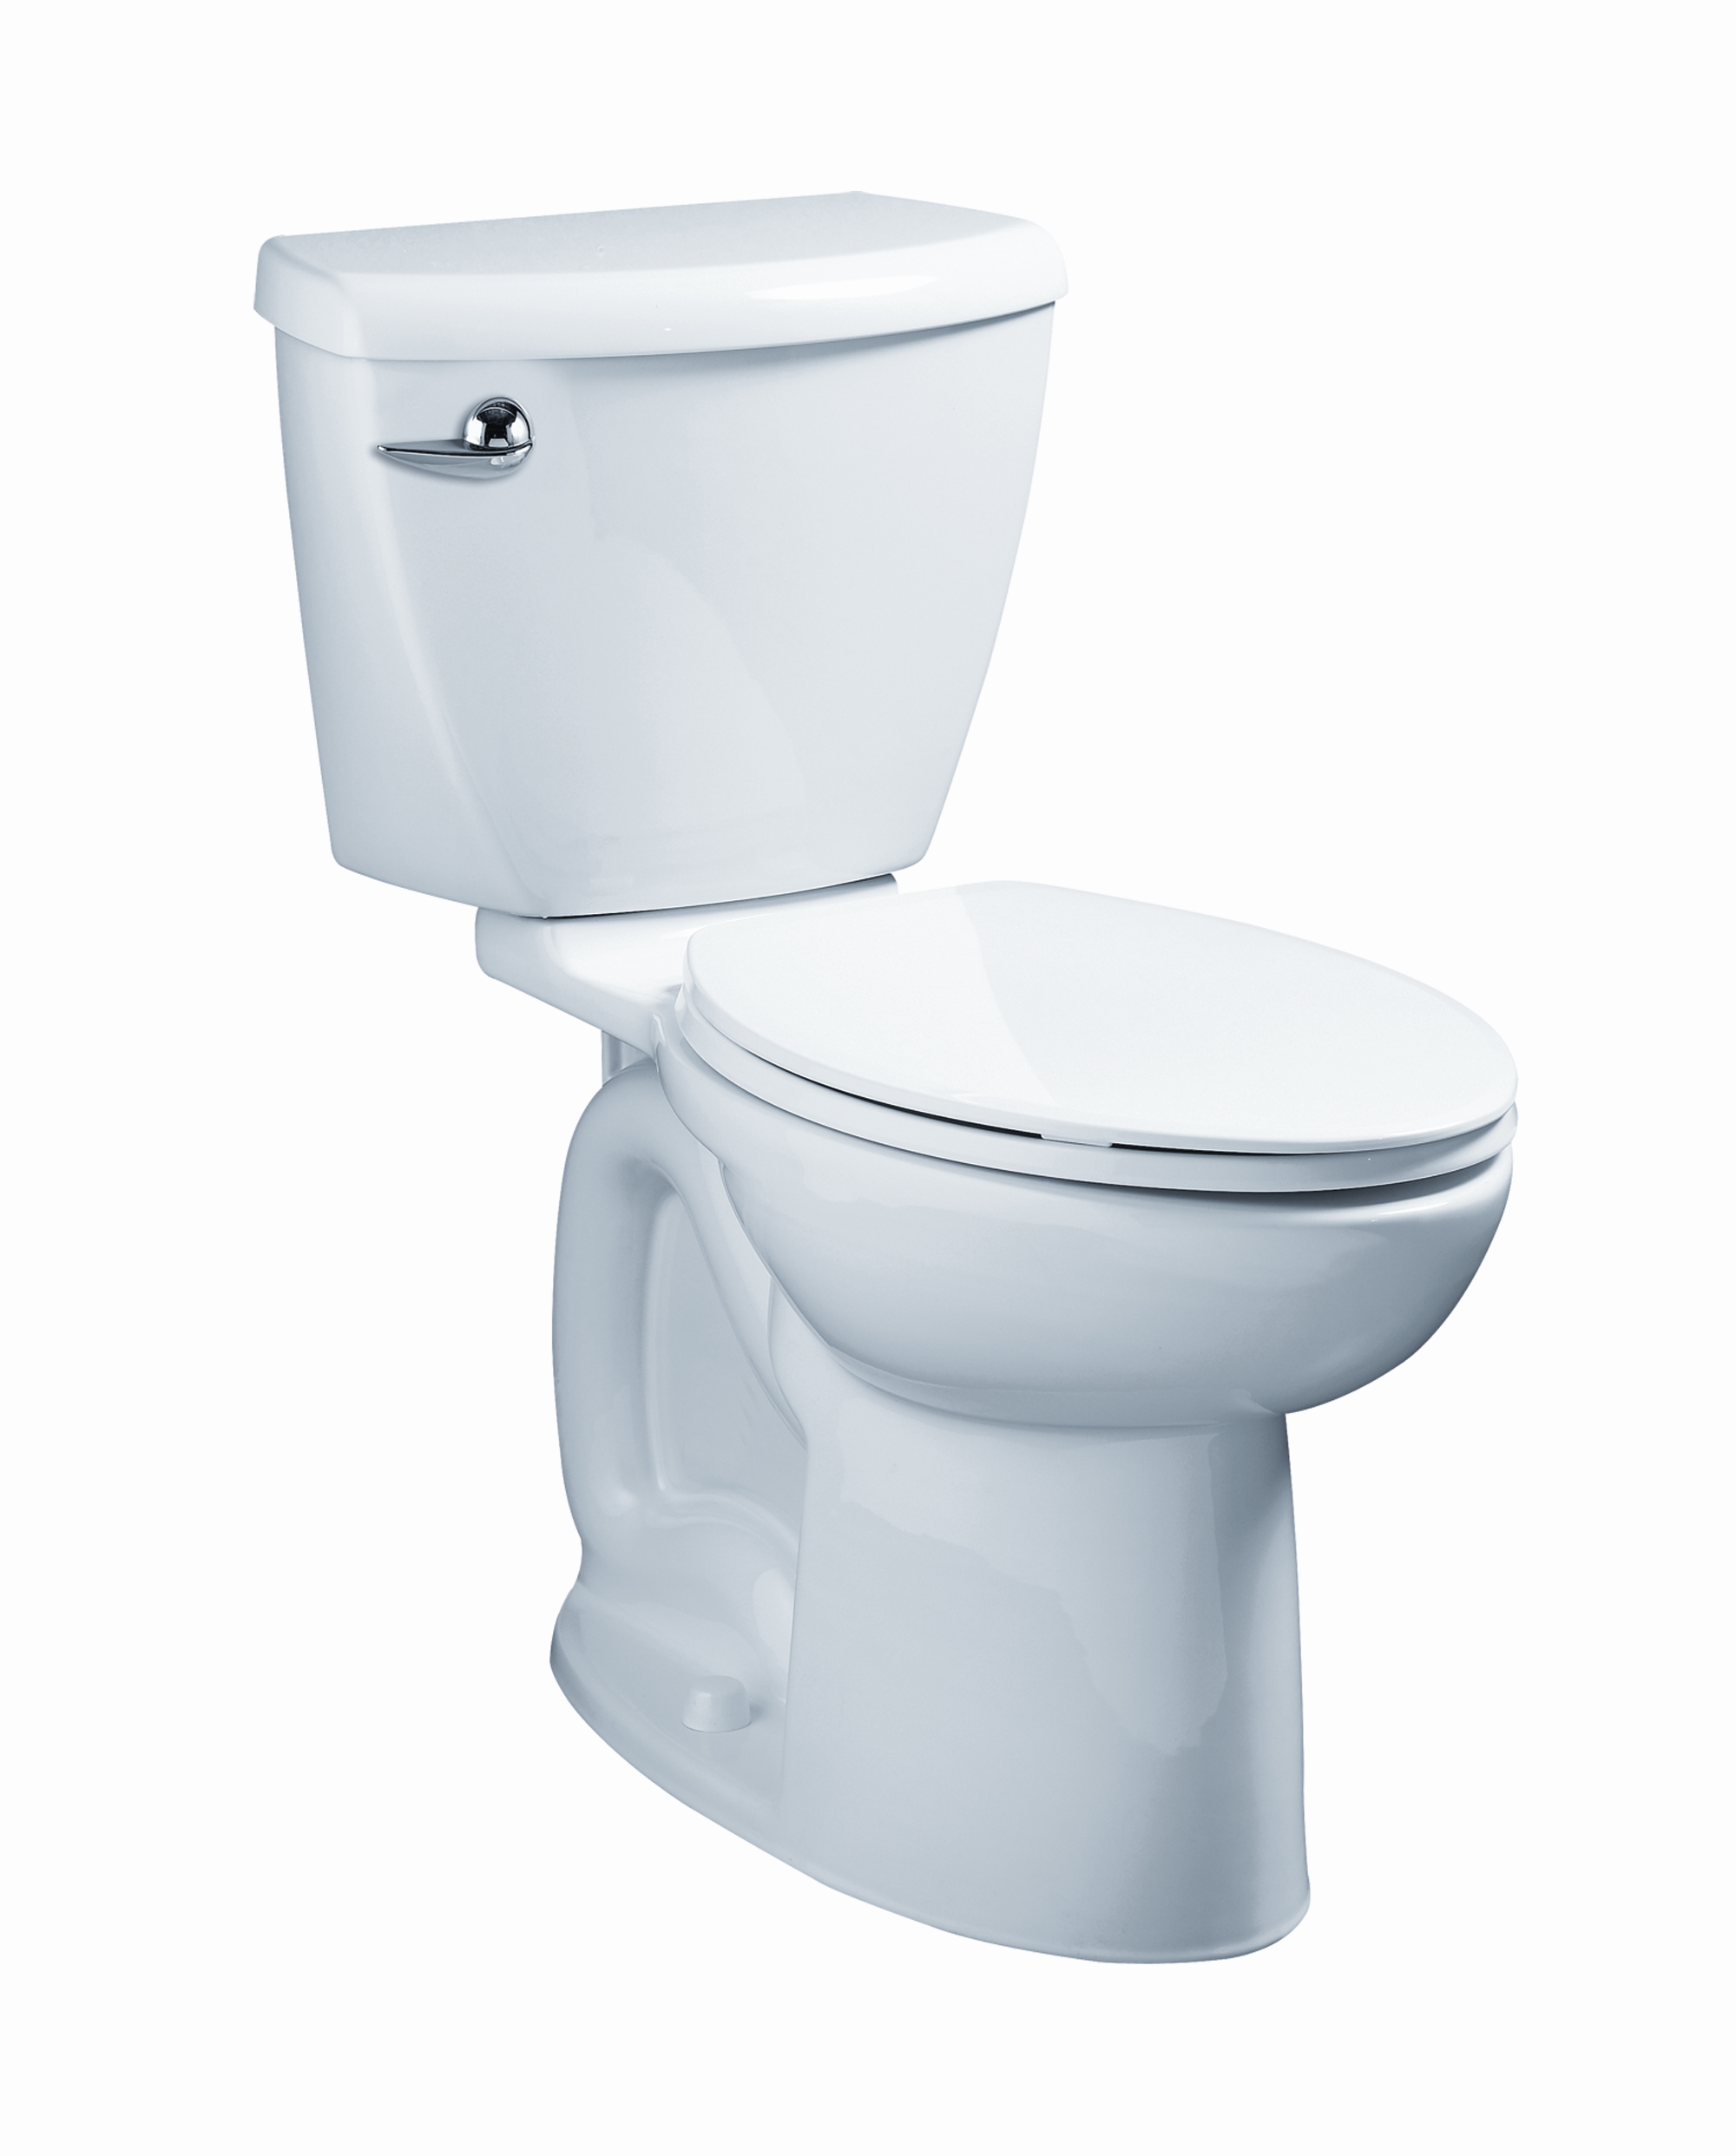 Toilette complète Ravenna 3, 2 pièces, 1,6 gpc/6,0 lpc, à cuvette allongée à hauteur de chaise et réservoir avec doublure, avec siège